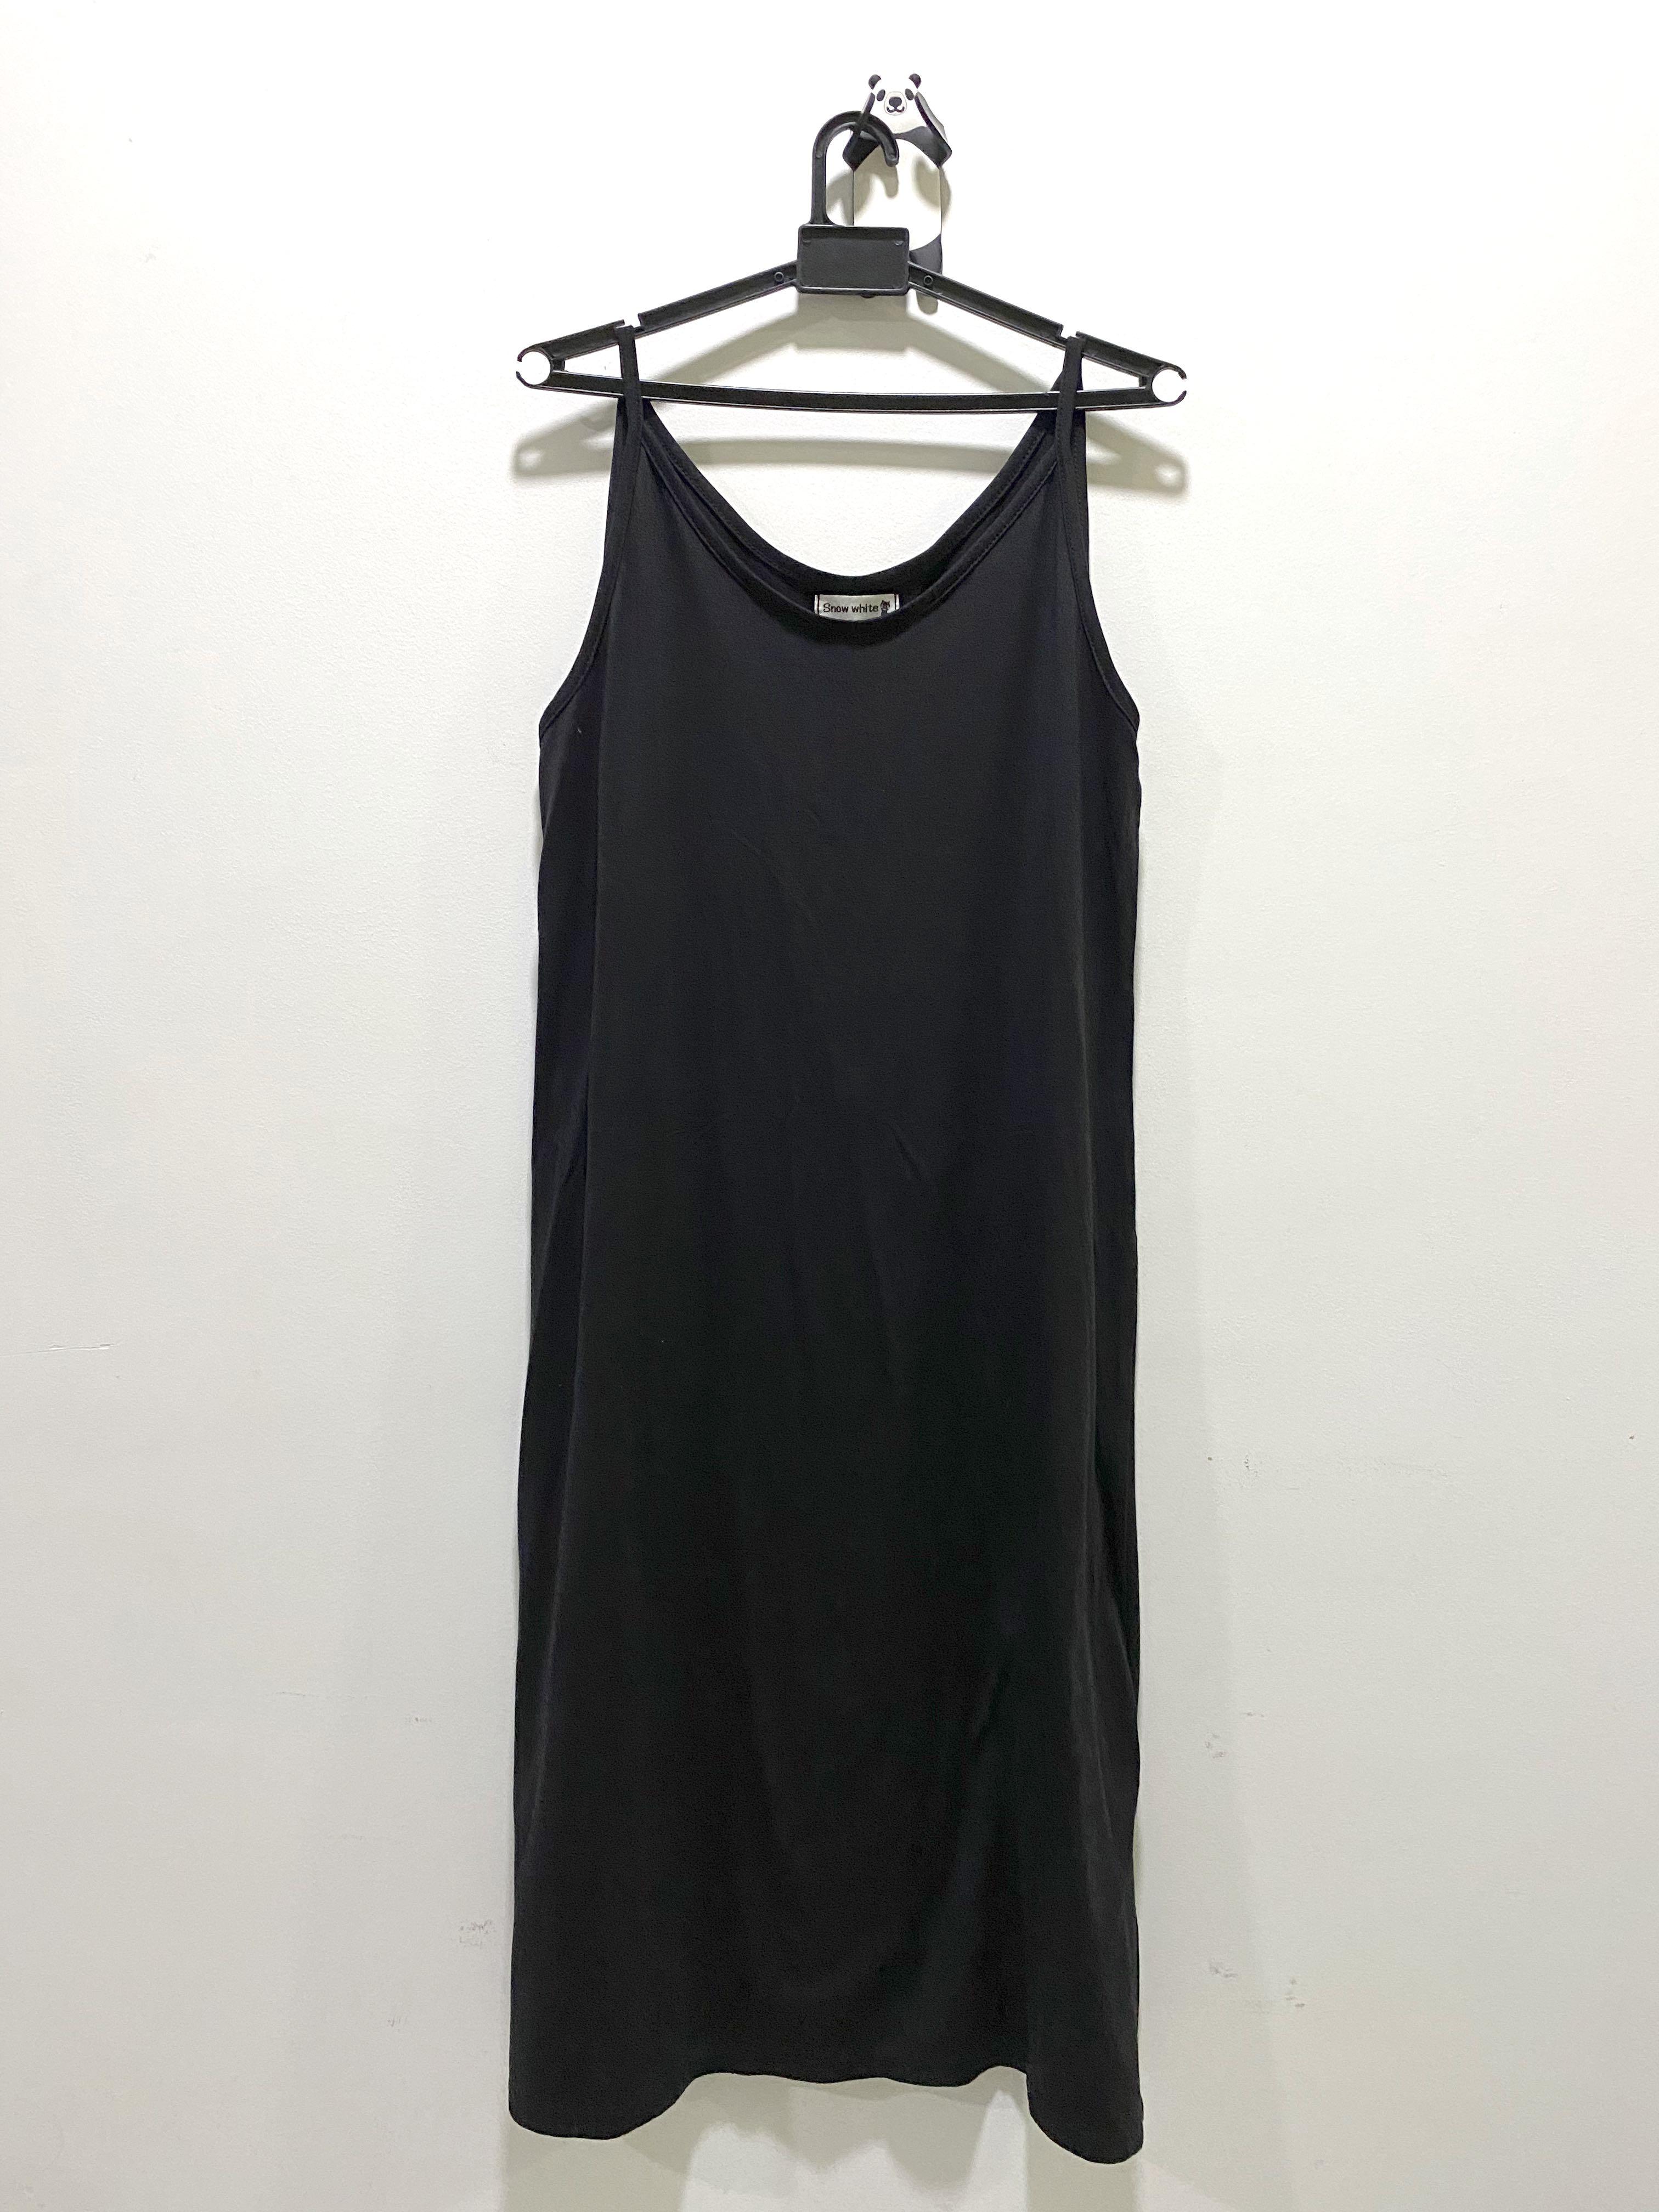 long black inner dress